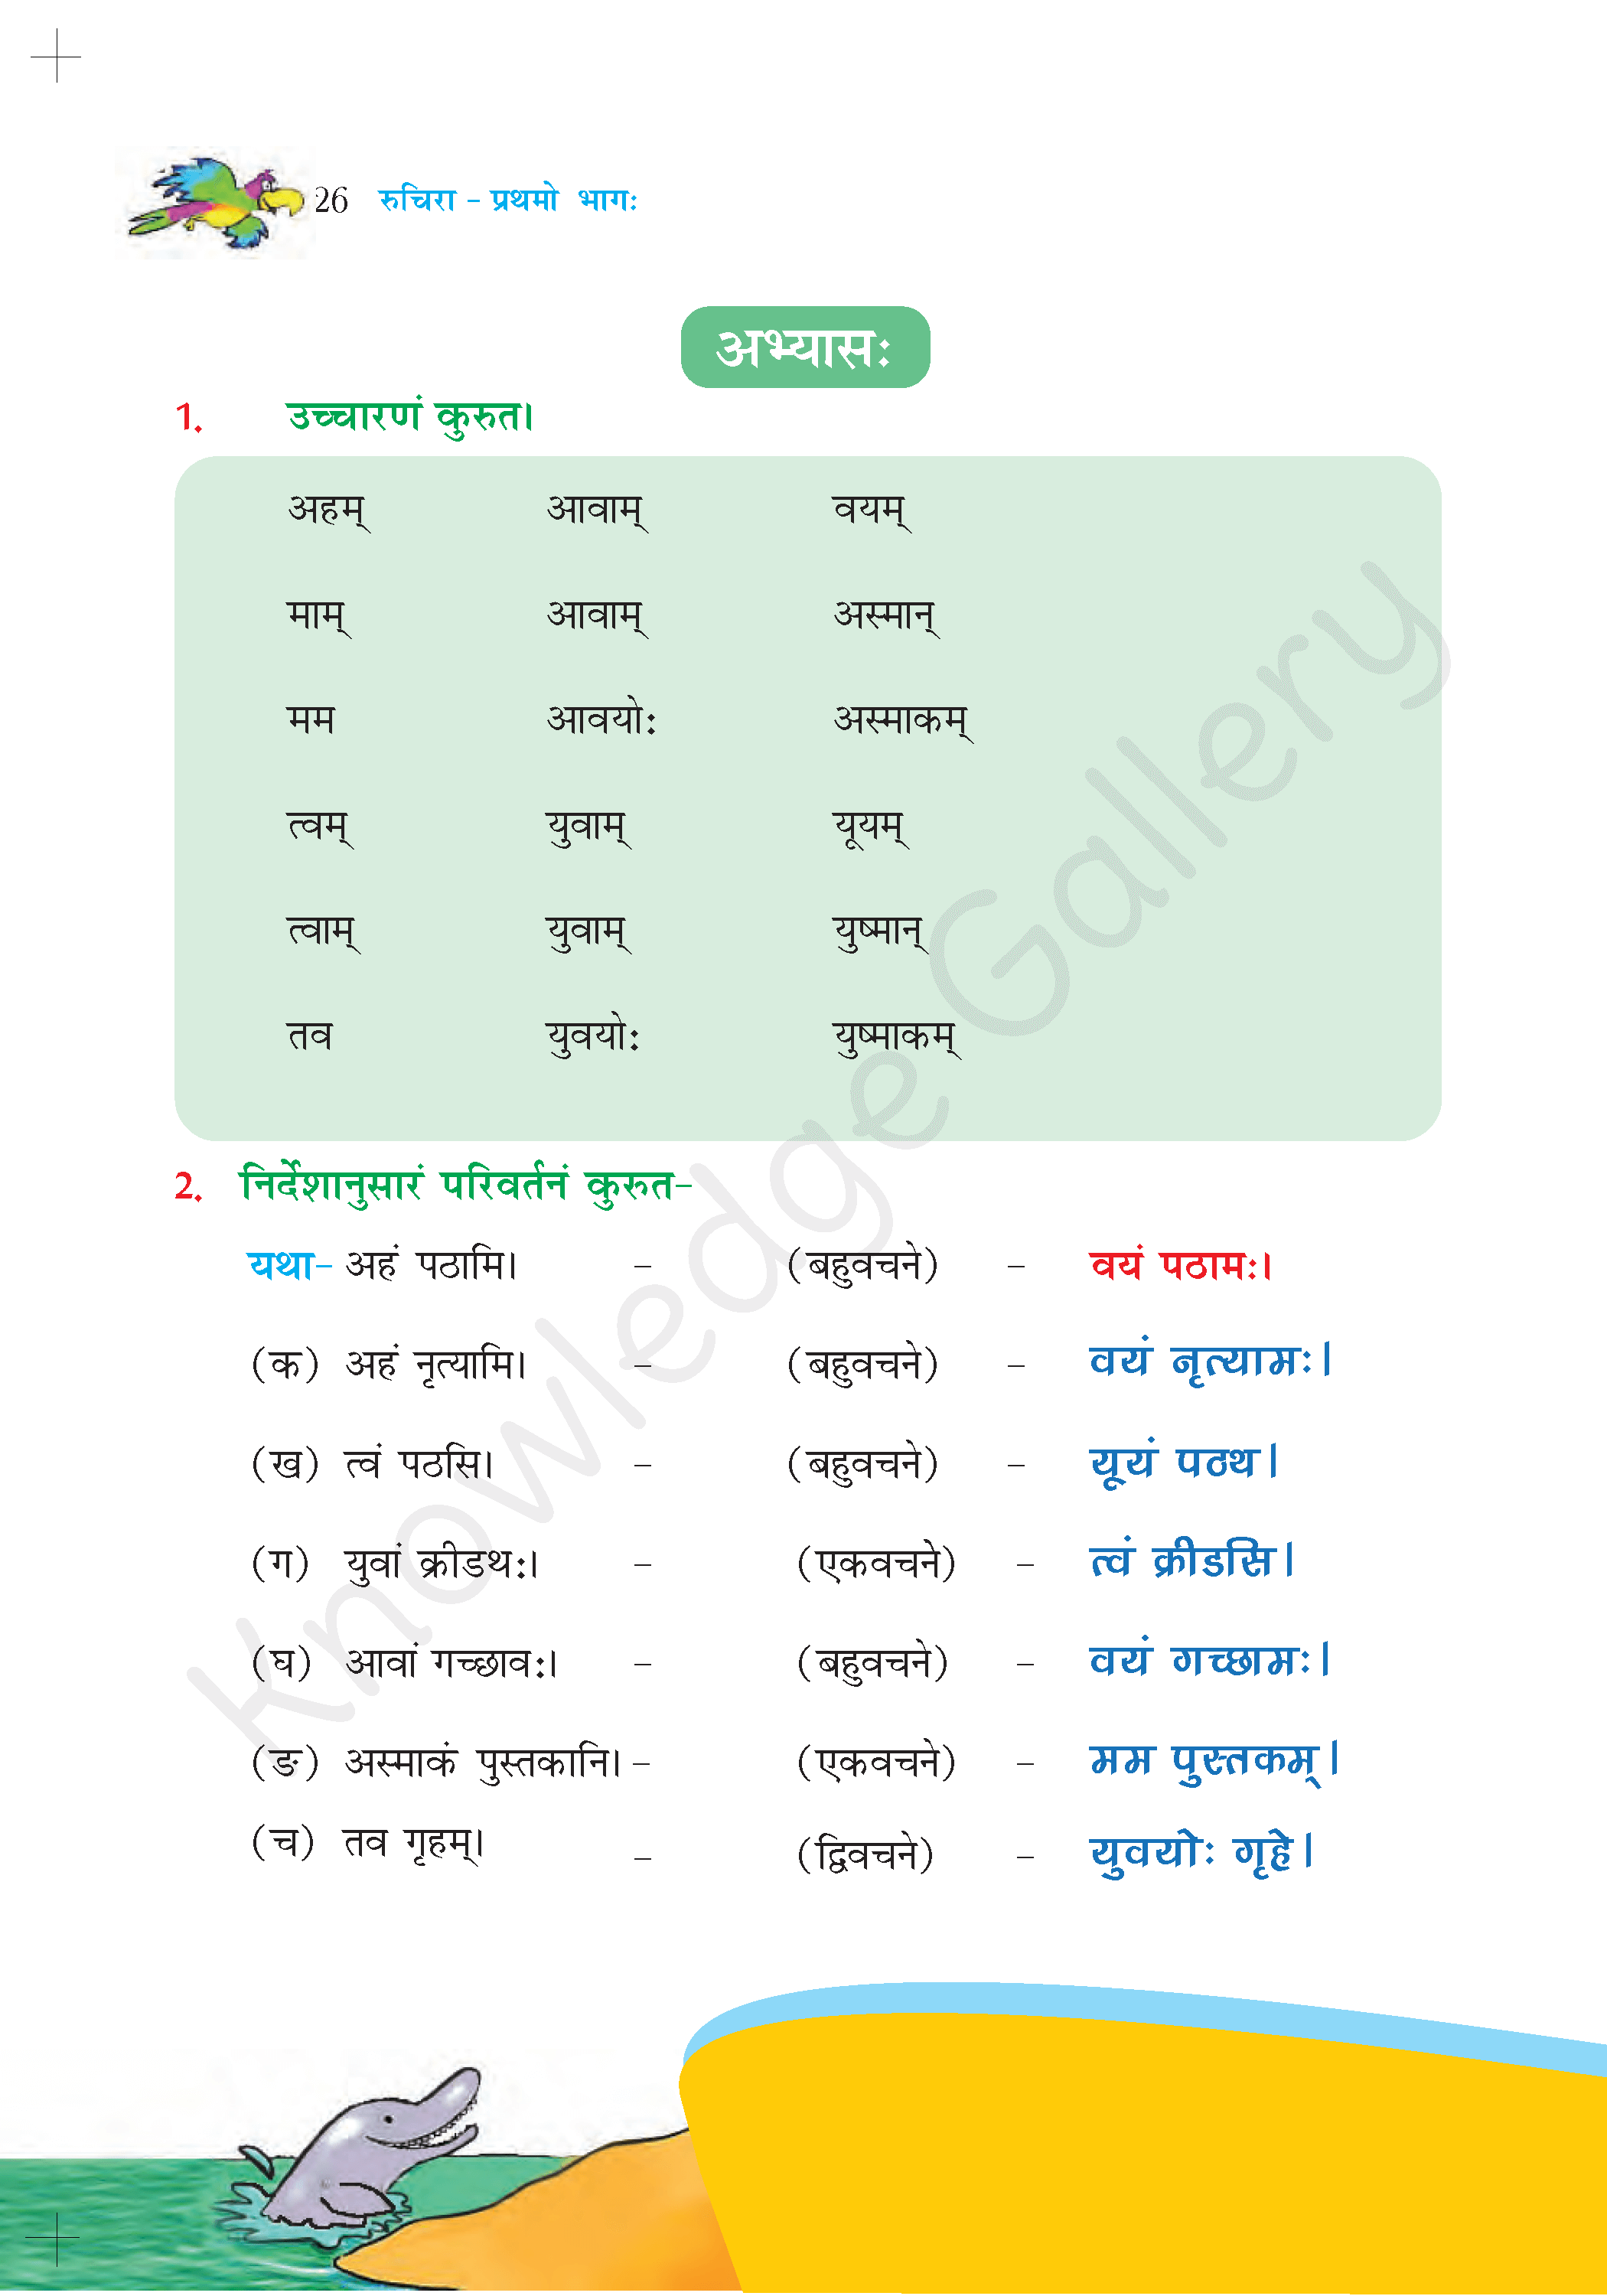 NCERT Solution For Class 6 Sanskrit Chapter 4 part 5